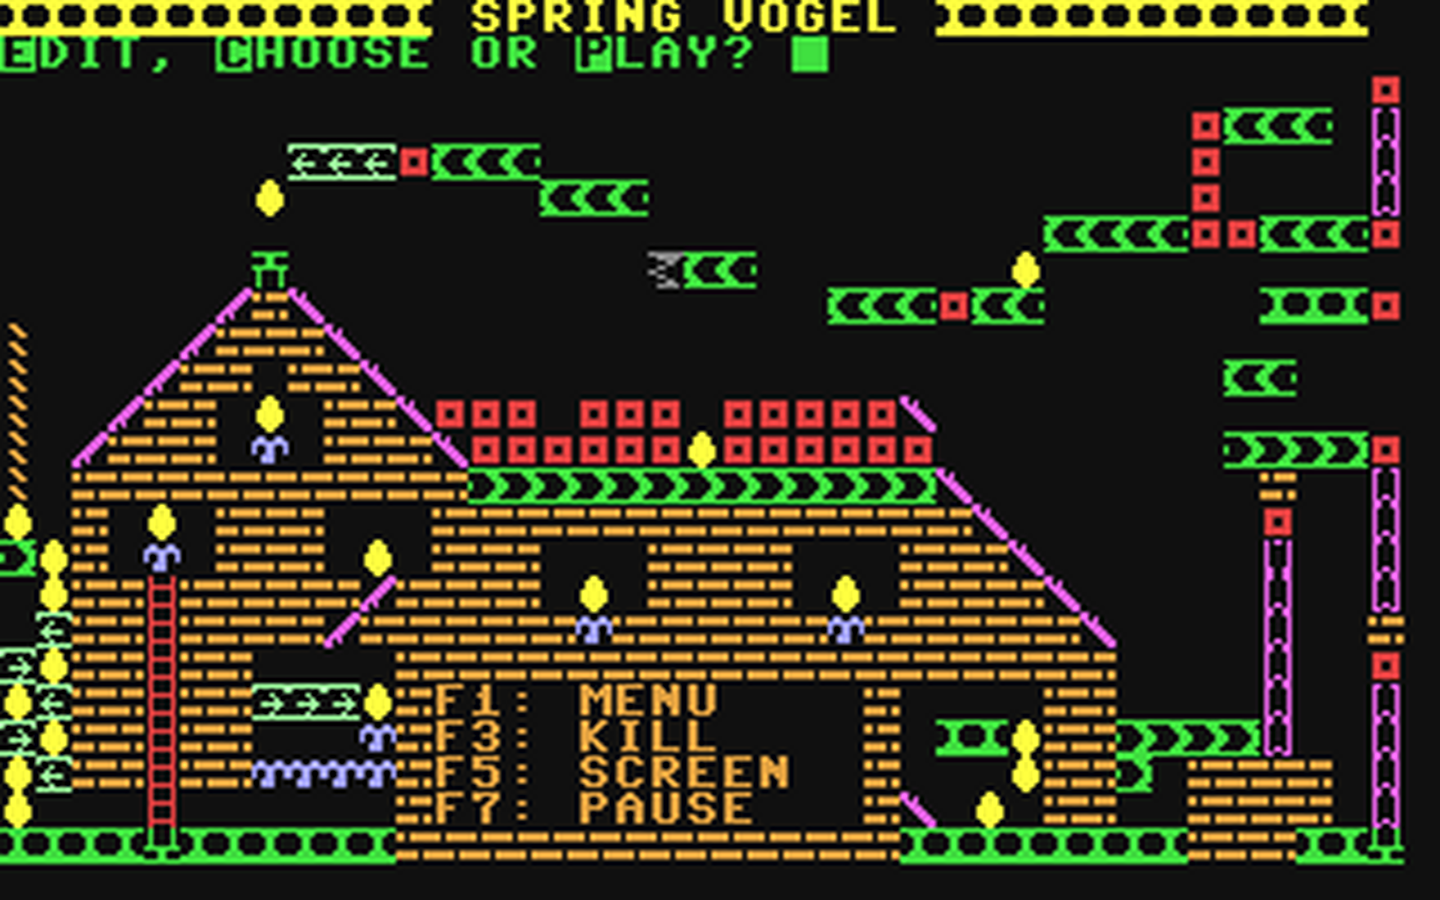 C64 GameBase Spring_Vogel (Not_Published) 1985